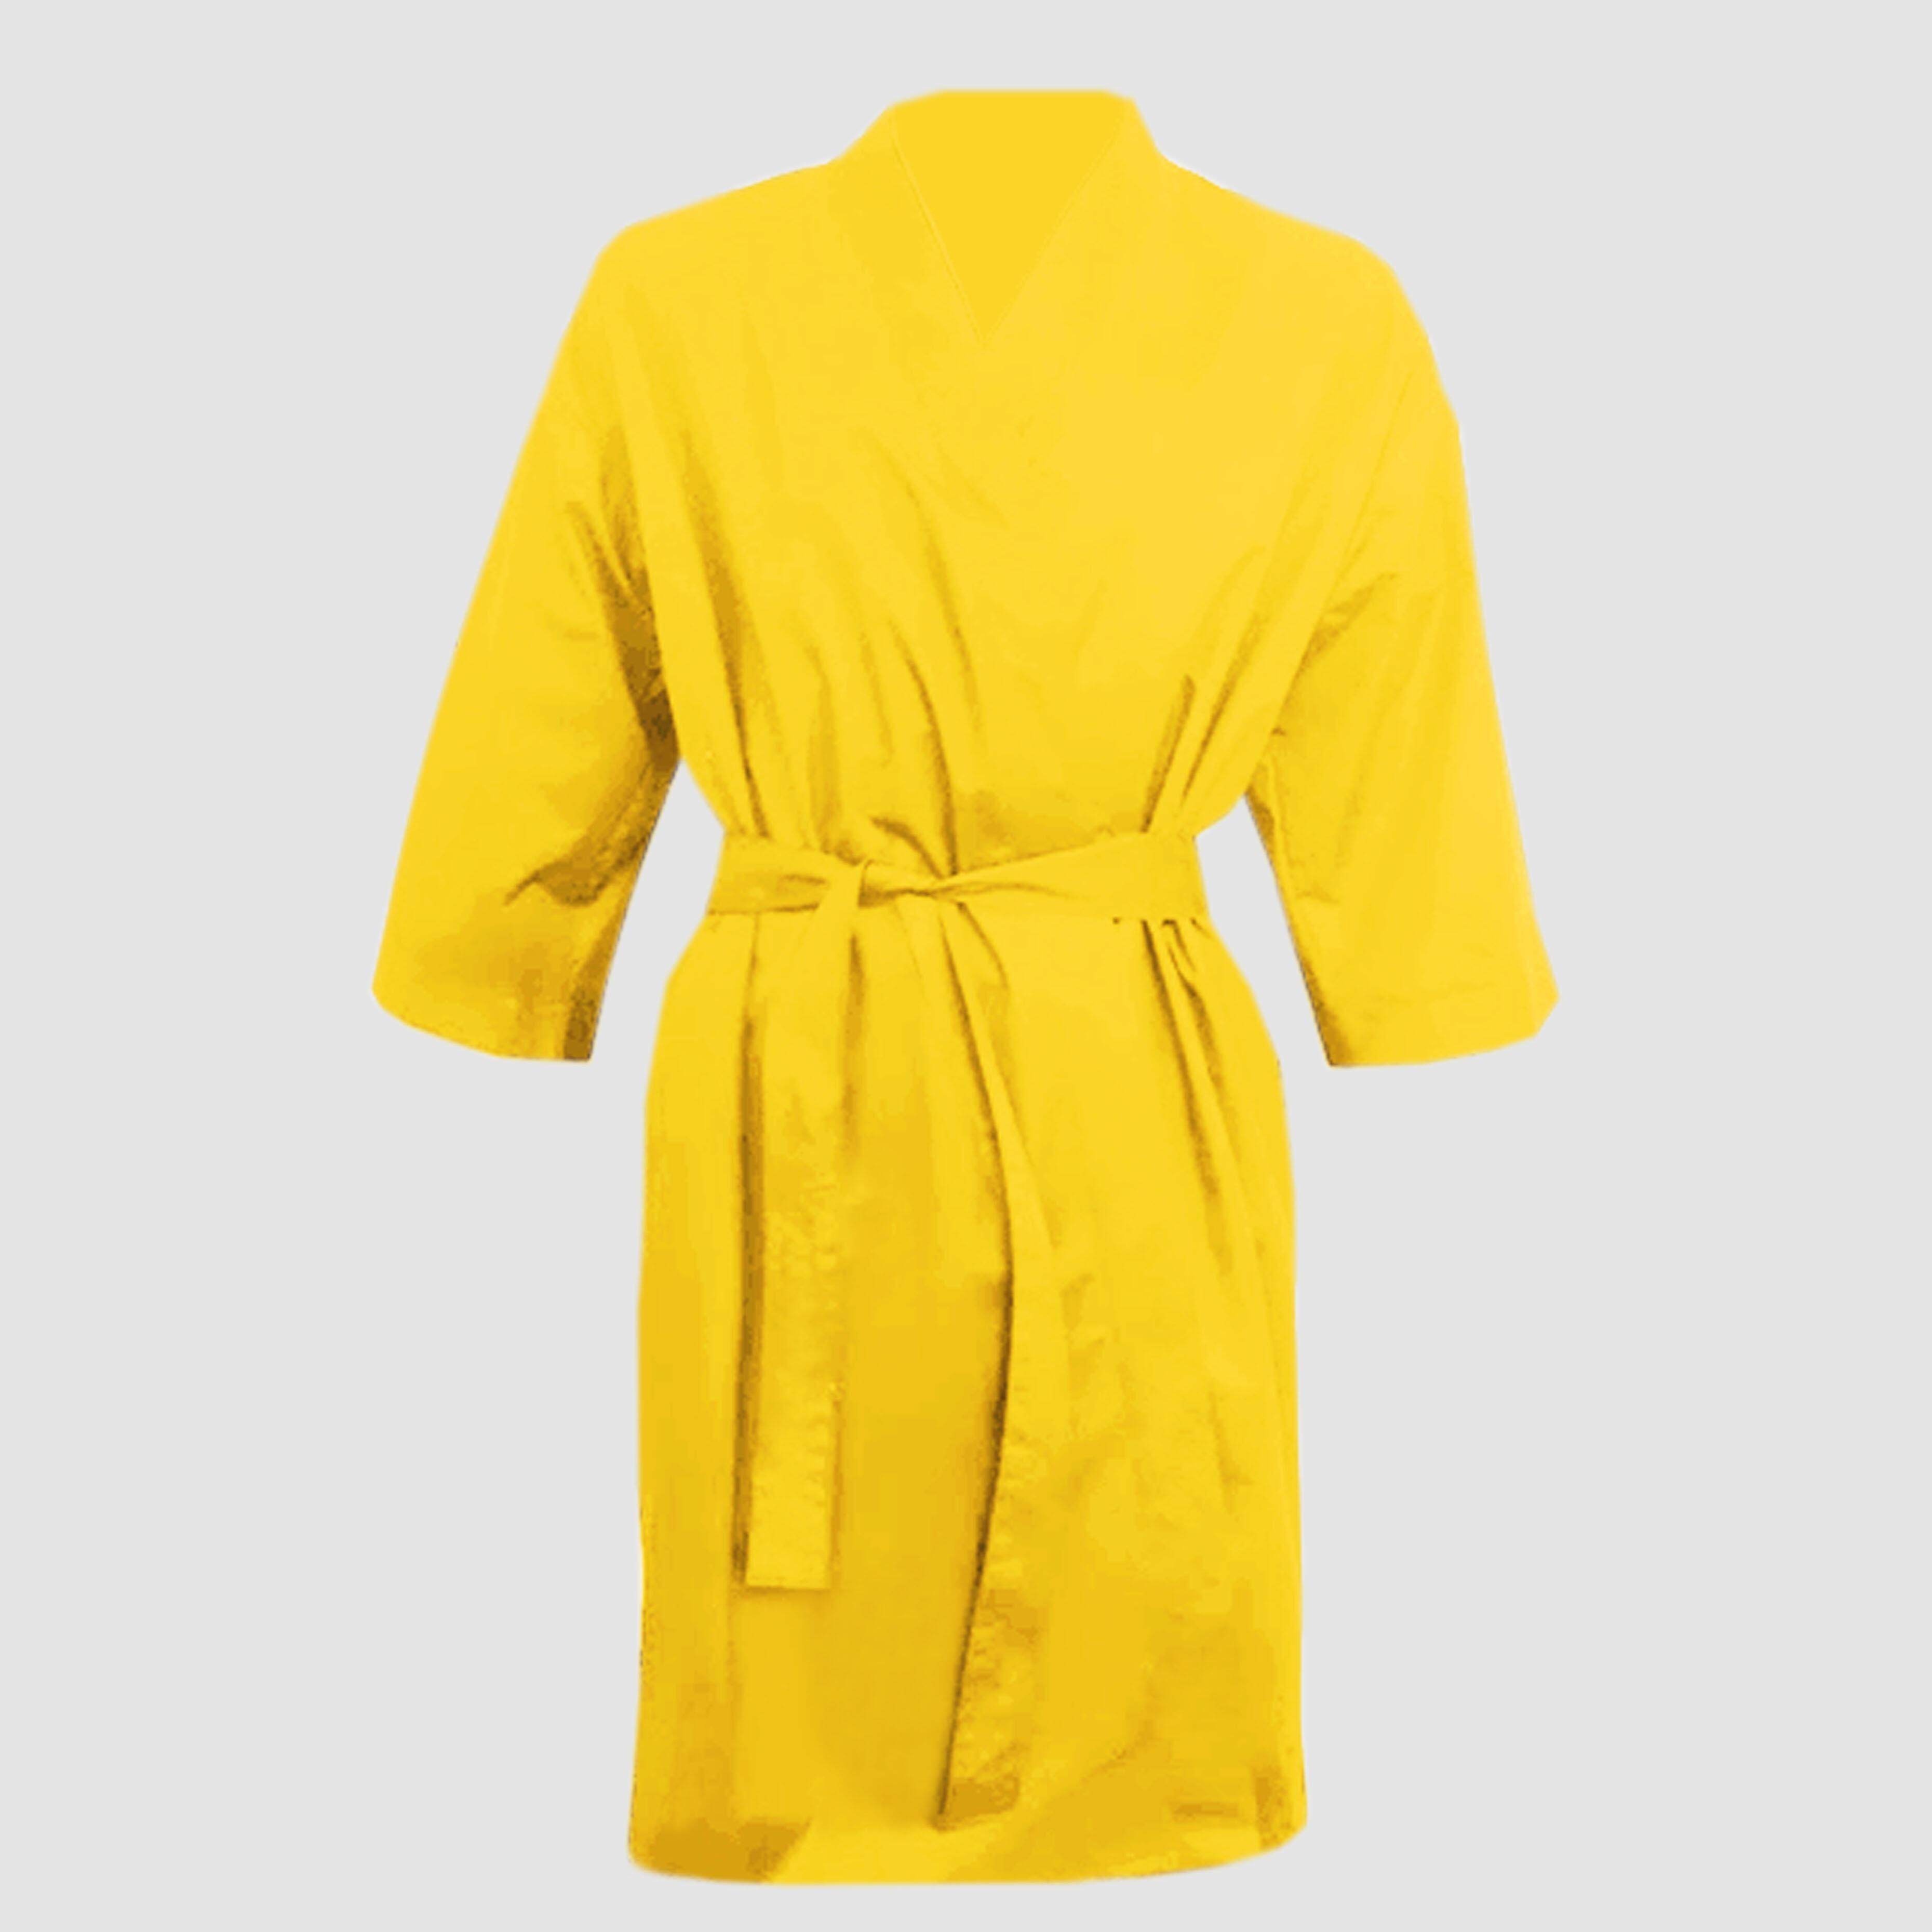 Nibano Hairdressing kimono gown yellow